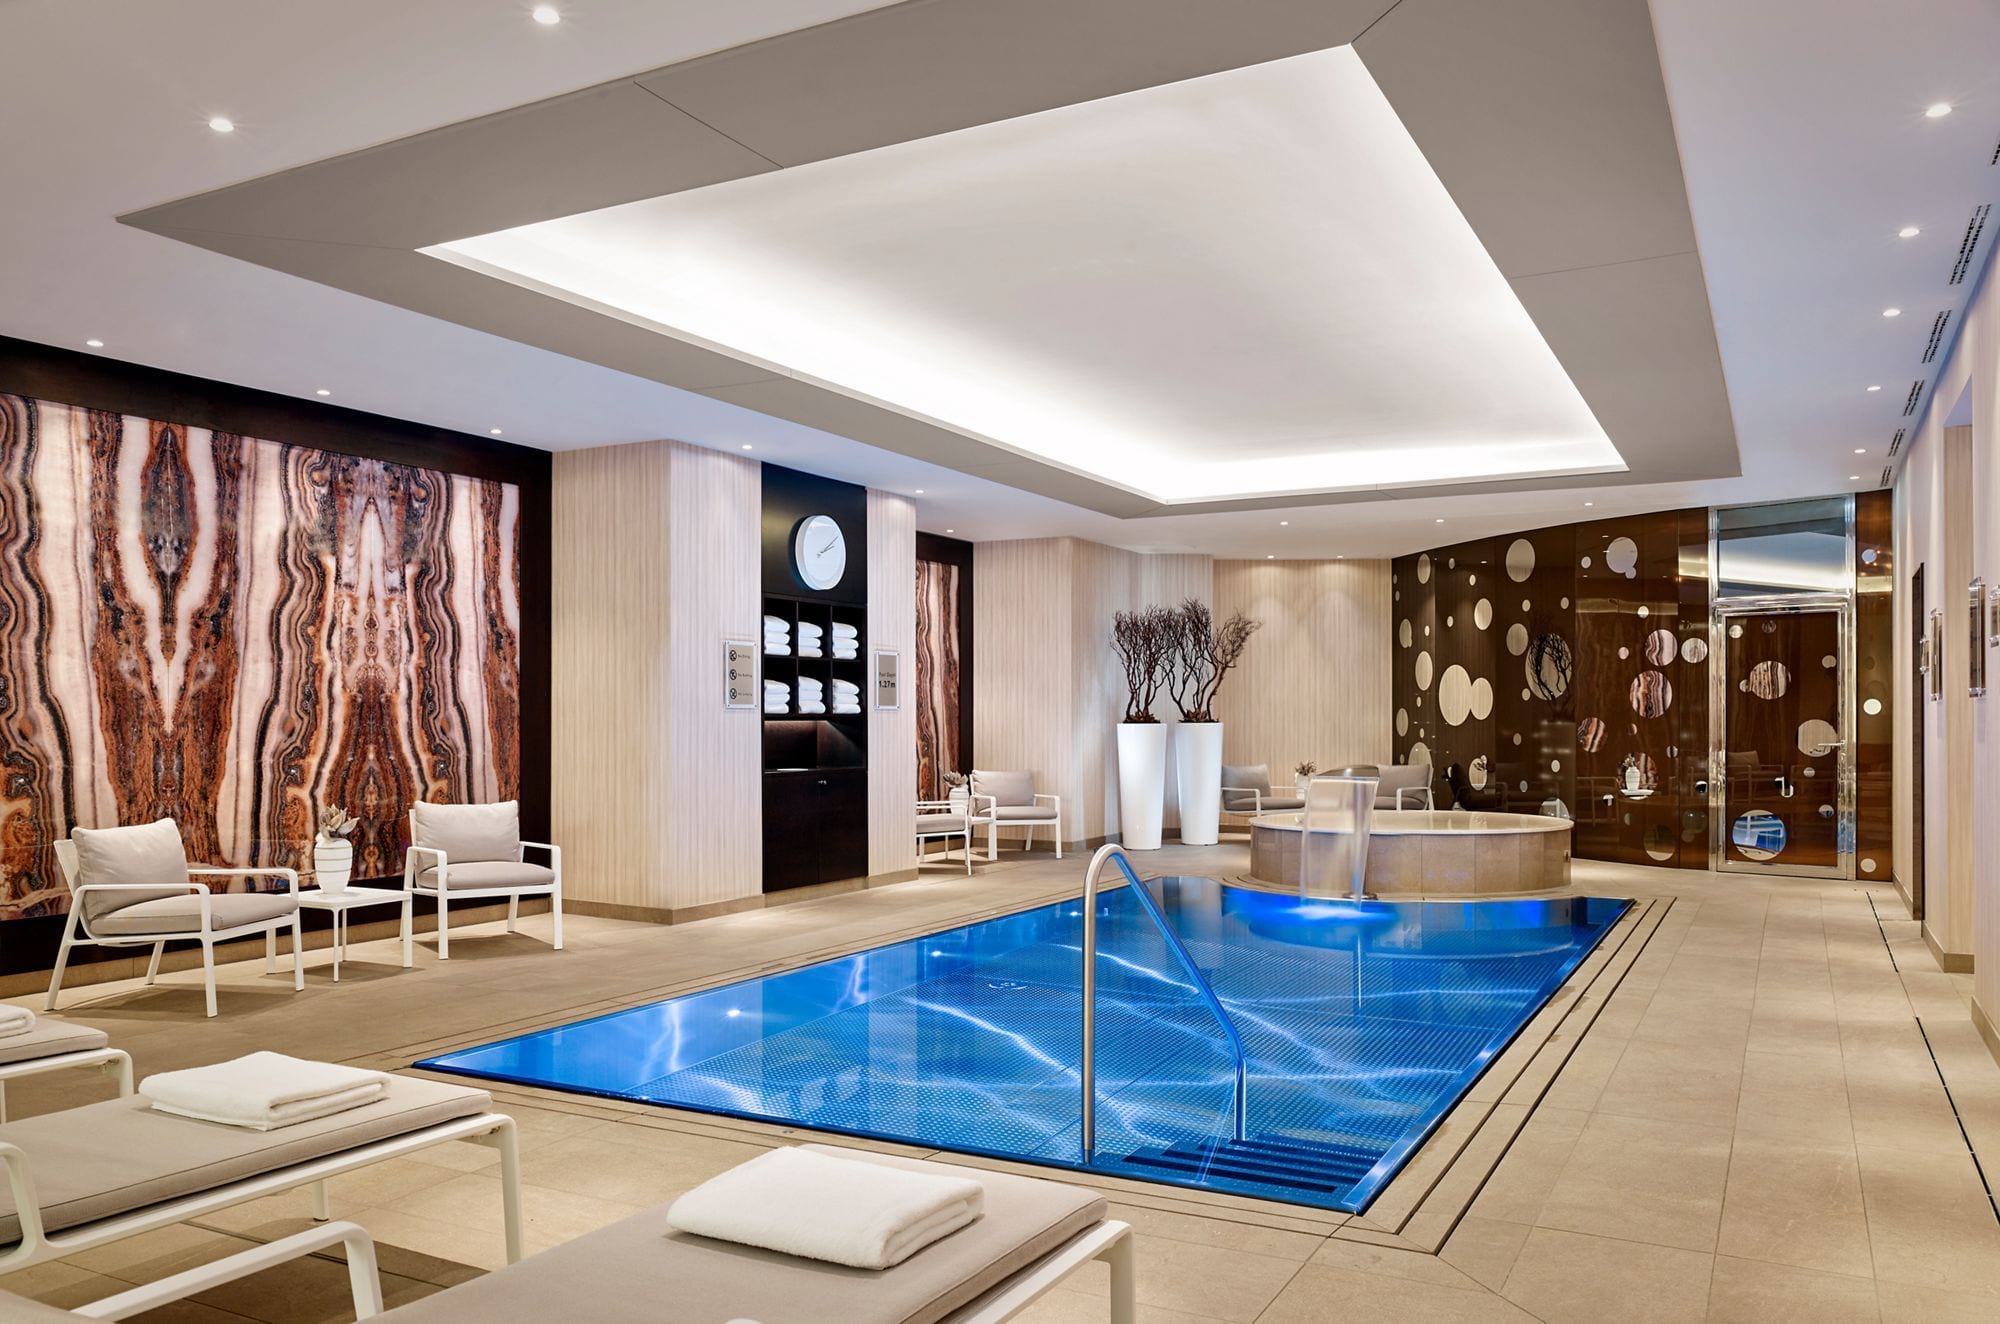 Přelivný nerezový bazén IMAGINOX v hotelu Ritz Carlton v Berlíně